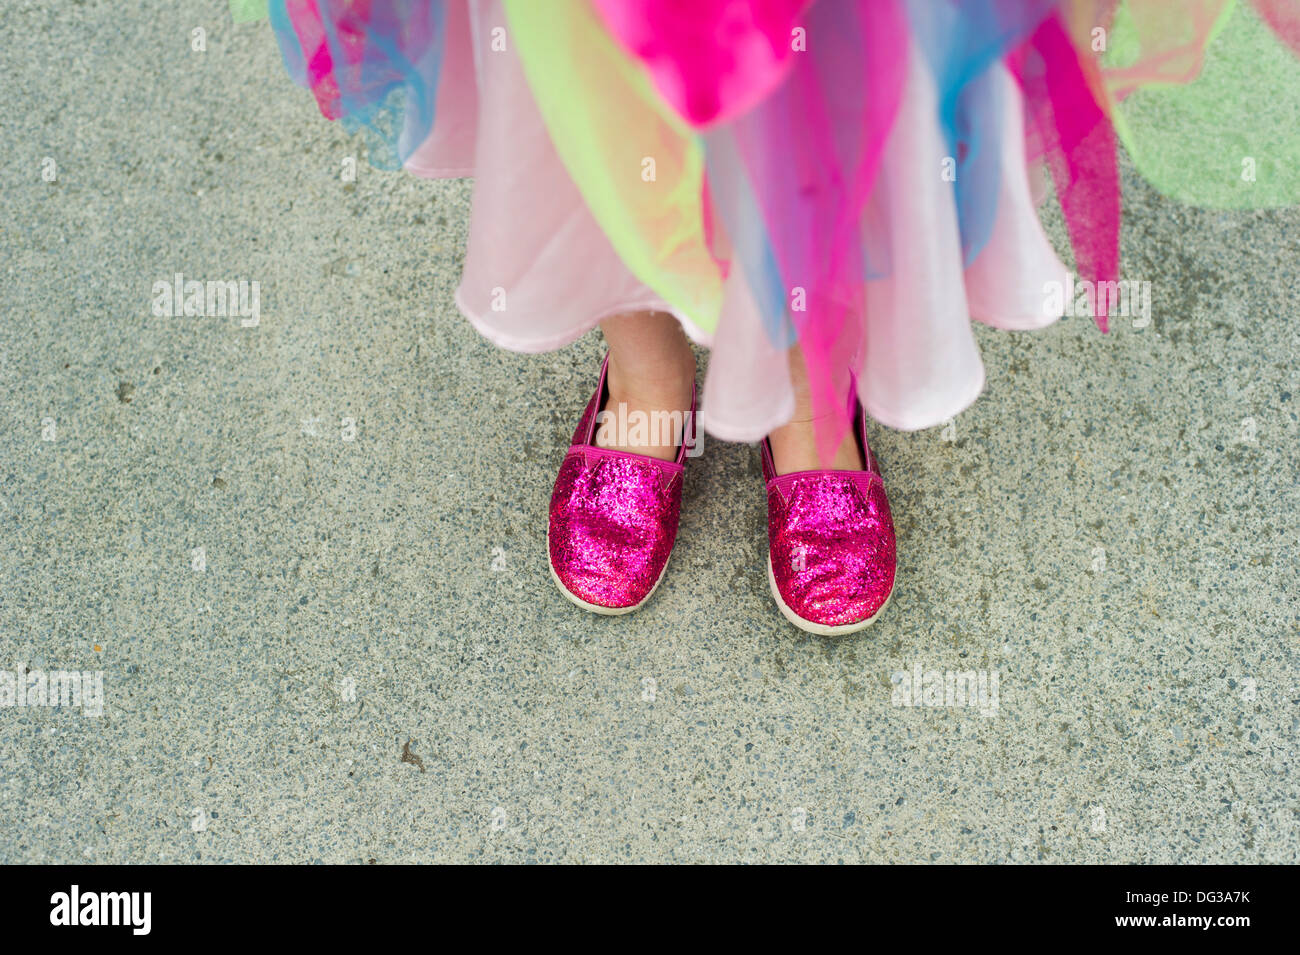 Junge Mädchen tragen bunte Kleidung und funkelnden rosa Schuhe, High Angle View Stockfoto